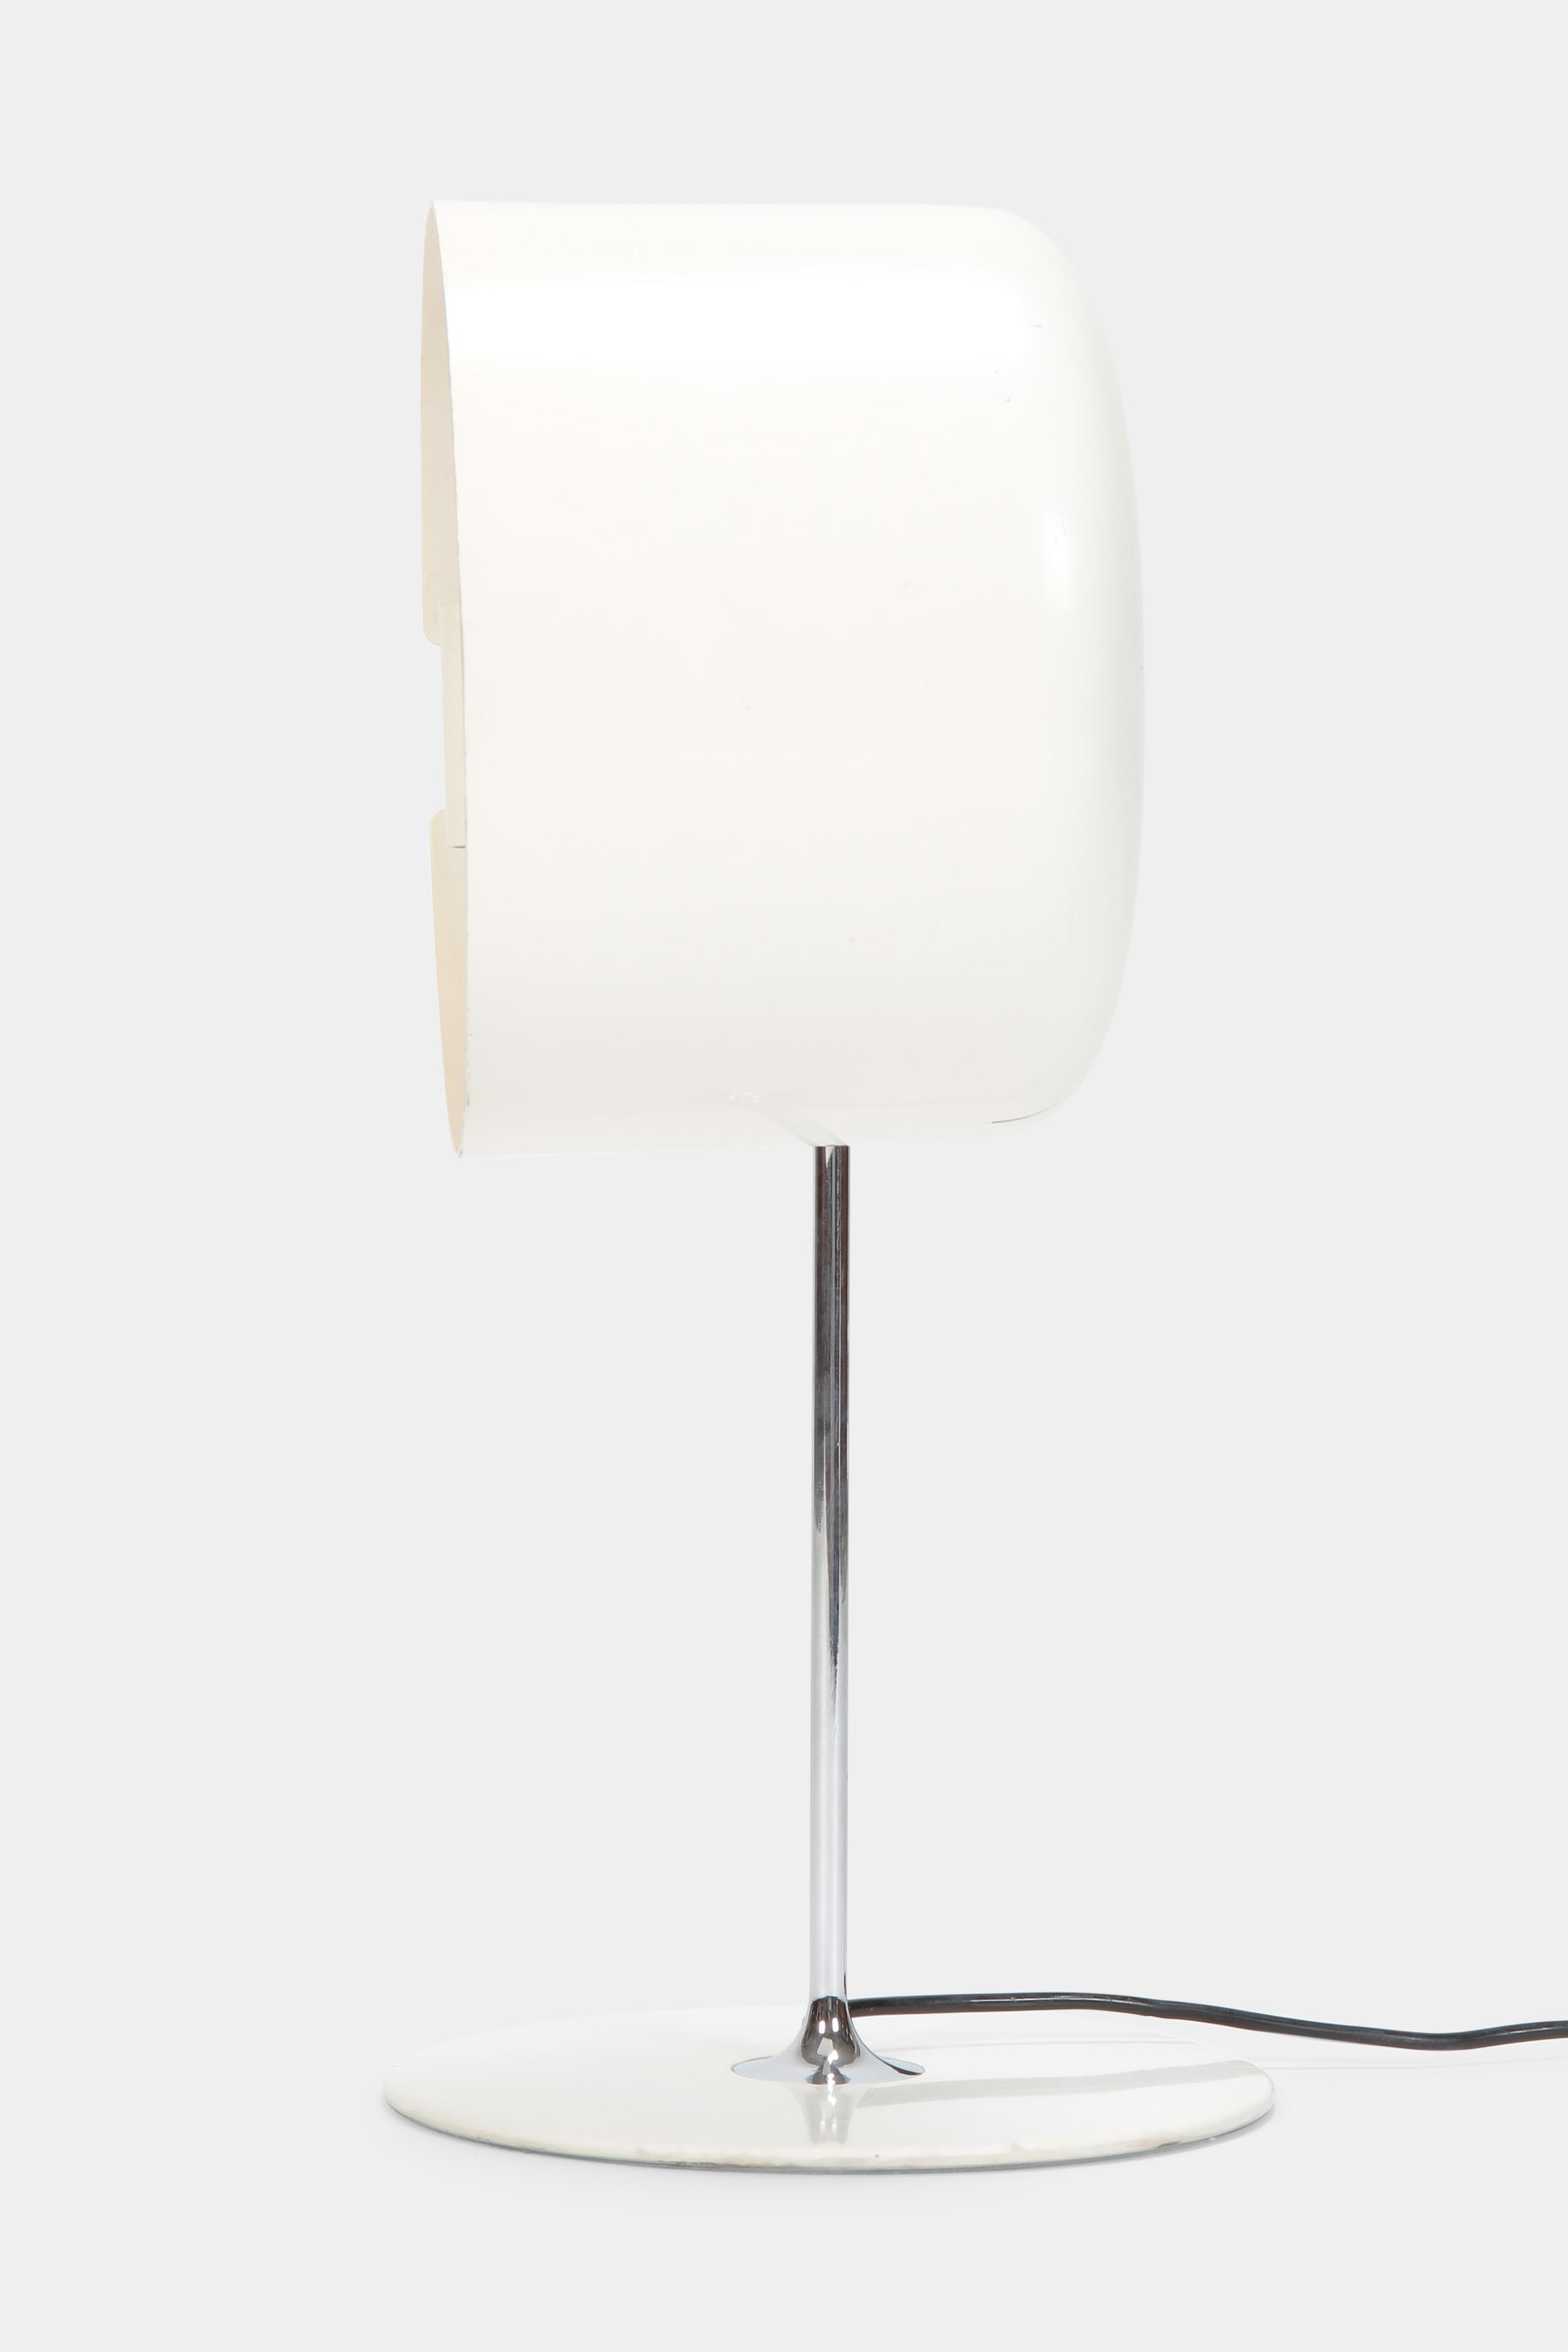 Joe Colombo "Coupe" Table Lamp, O-Luce SpA, 60s